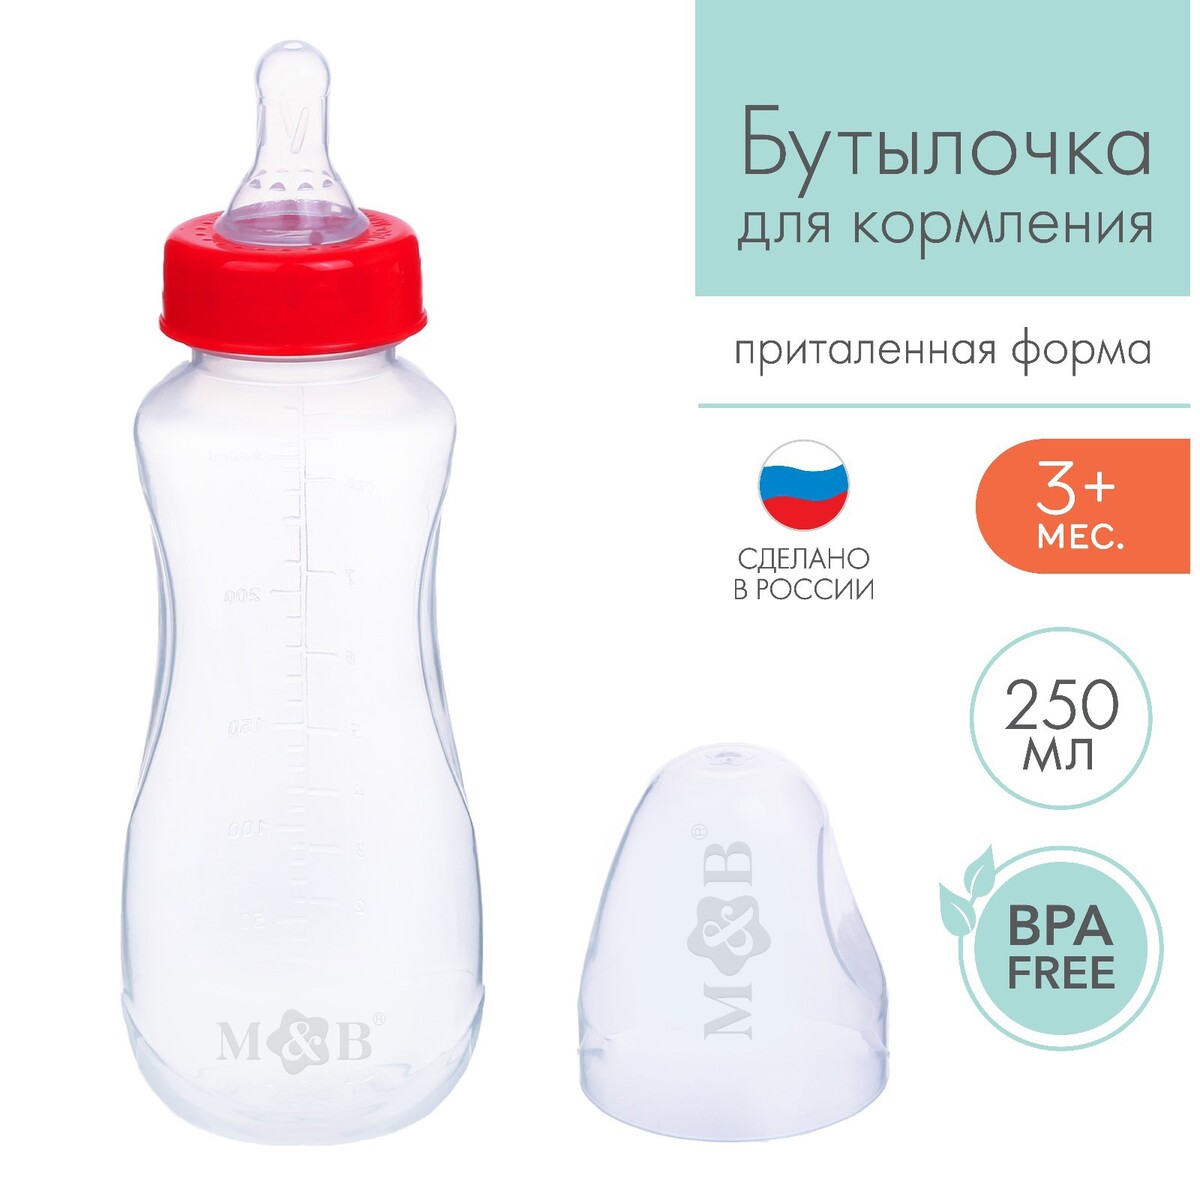 Бутылочка для кормления, классическое горло, приталенная, 250 мл., от 3 мес., цвет красный бутылочка для кормления